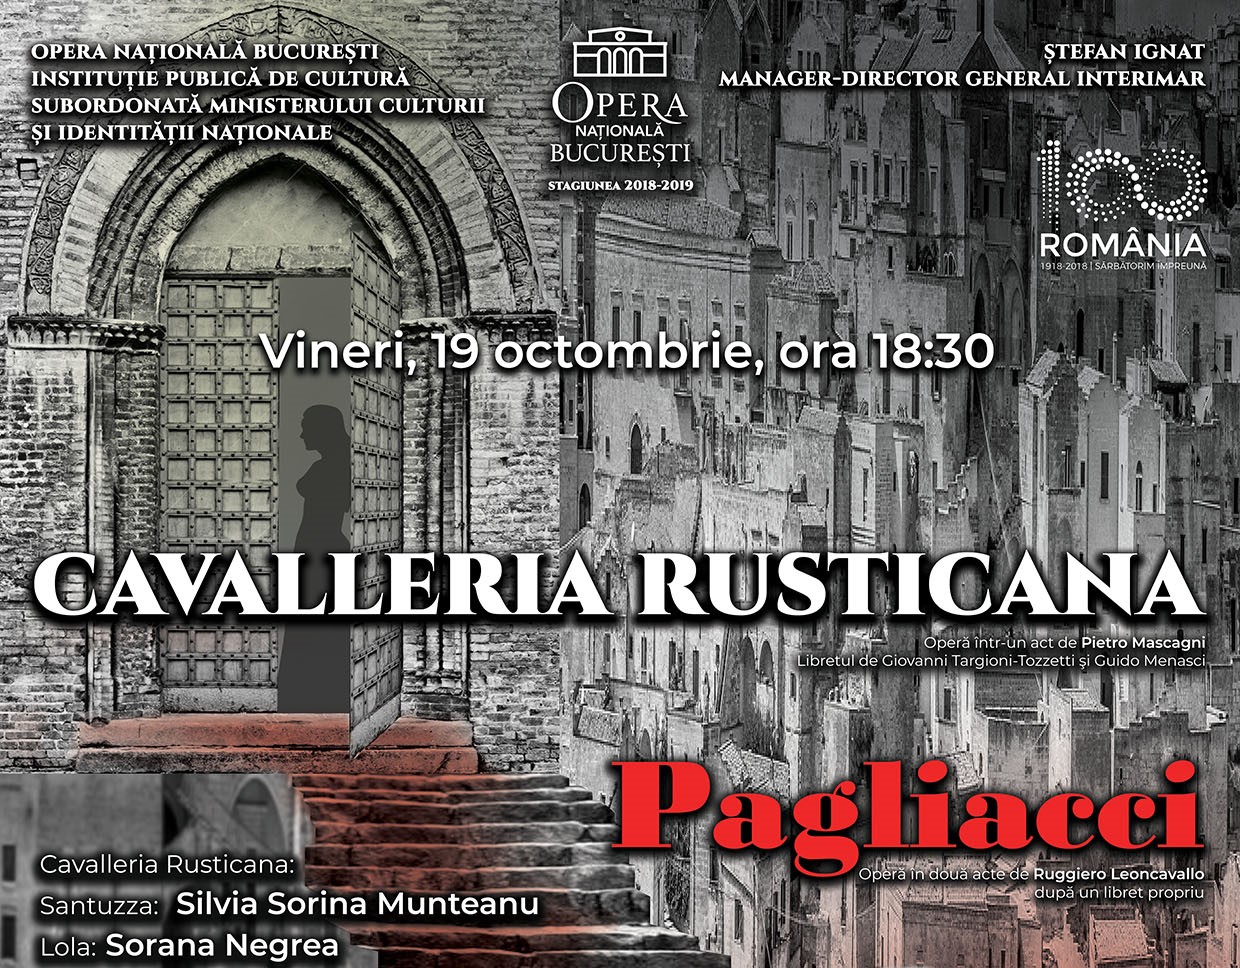 Cavalleria Rusticana & Pagliacci opera raftul cu idei